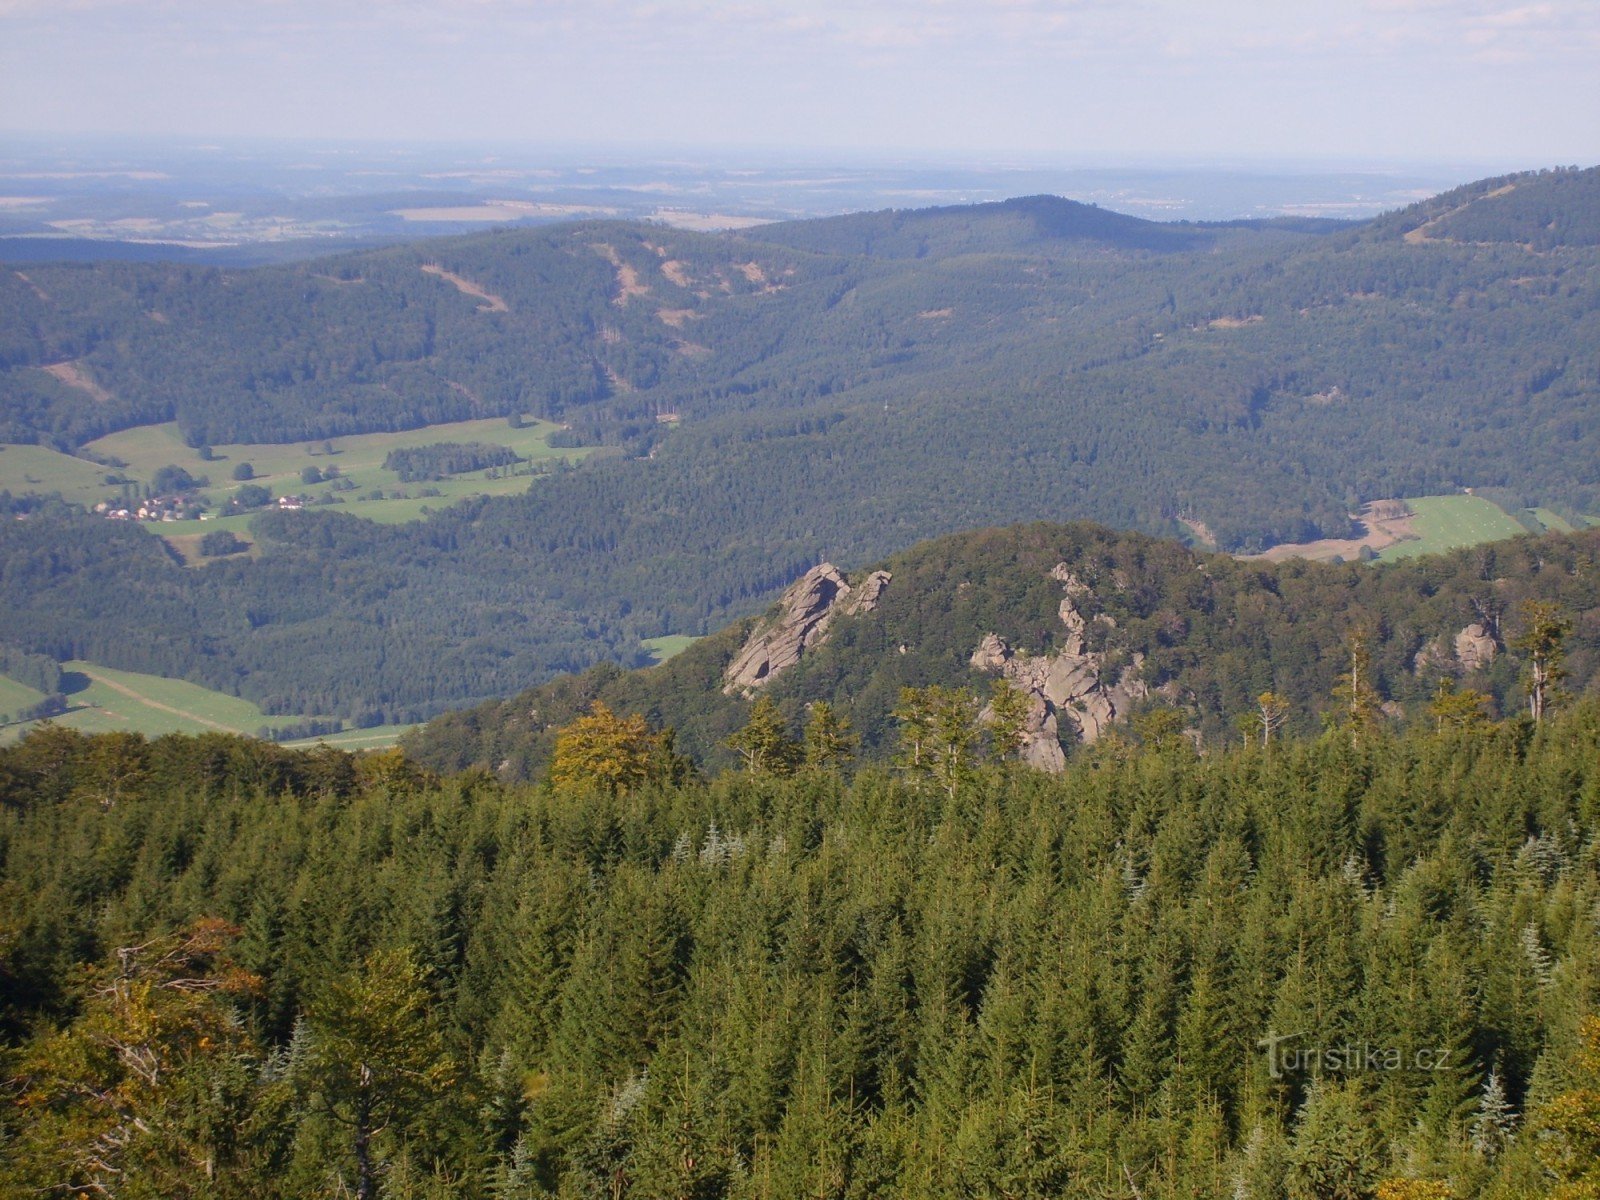 Utsikten från Ptáčí kup